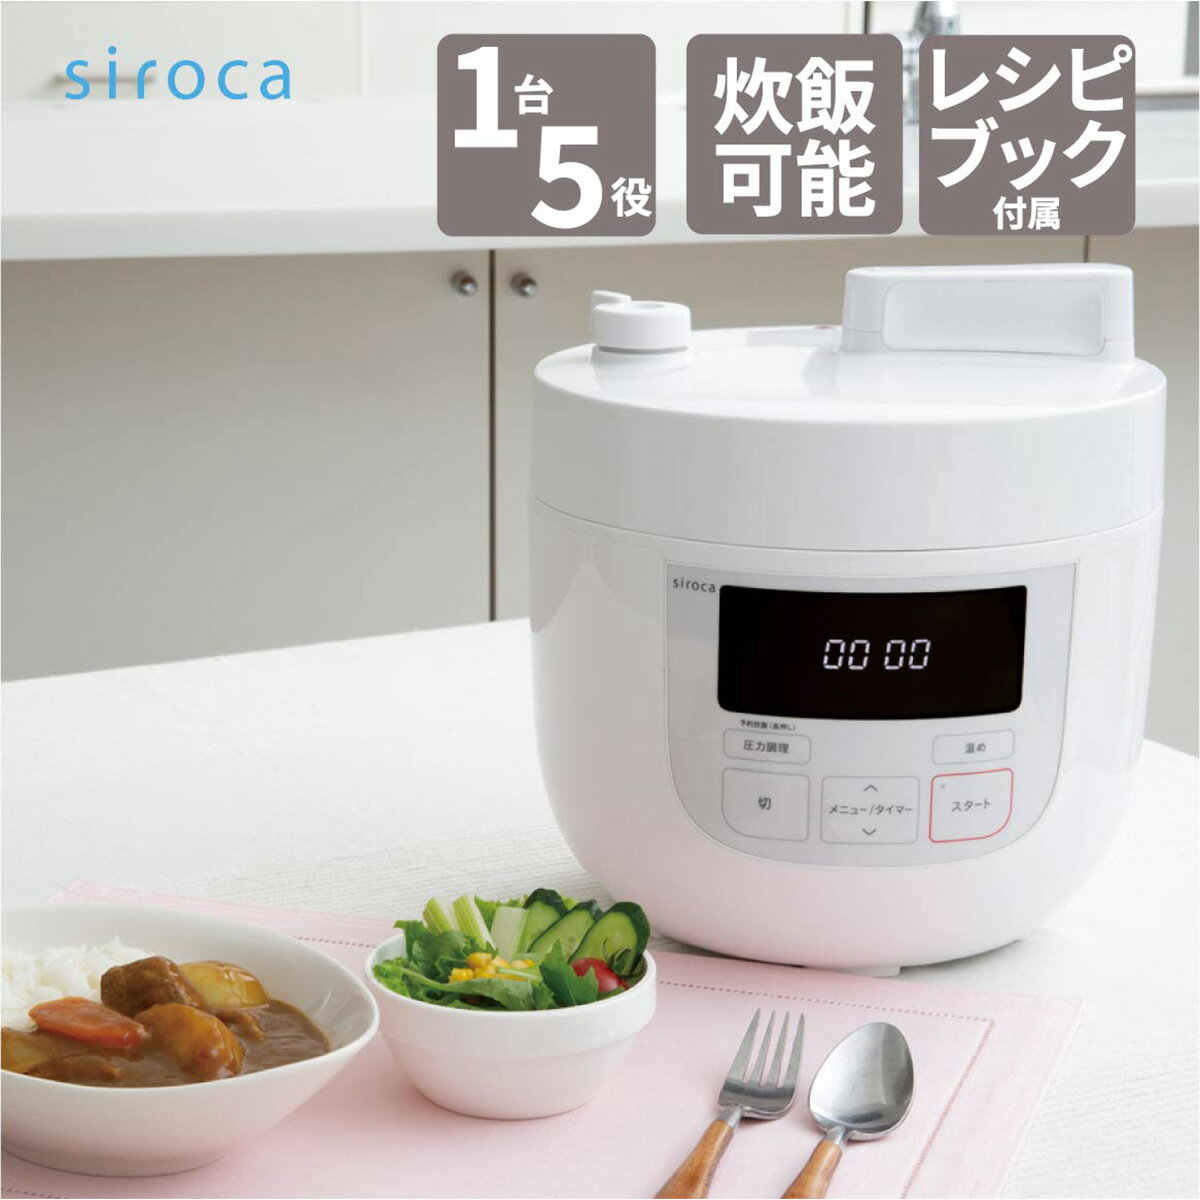 シロカ siroca 電気圧力鍋 4L ホワイト 大容量 圧力 無水 蒸し 炊飯 温め直し 大容量 SP-4D131(W)